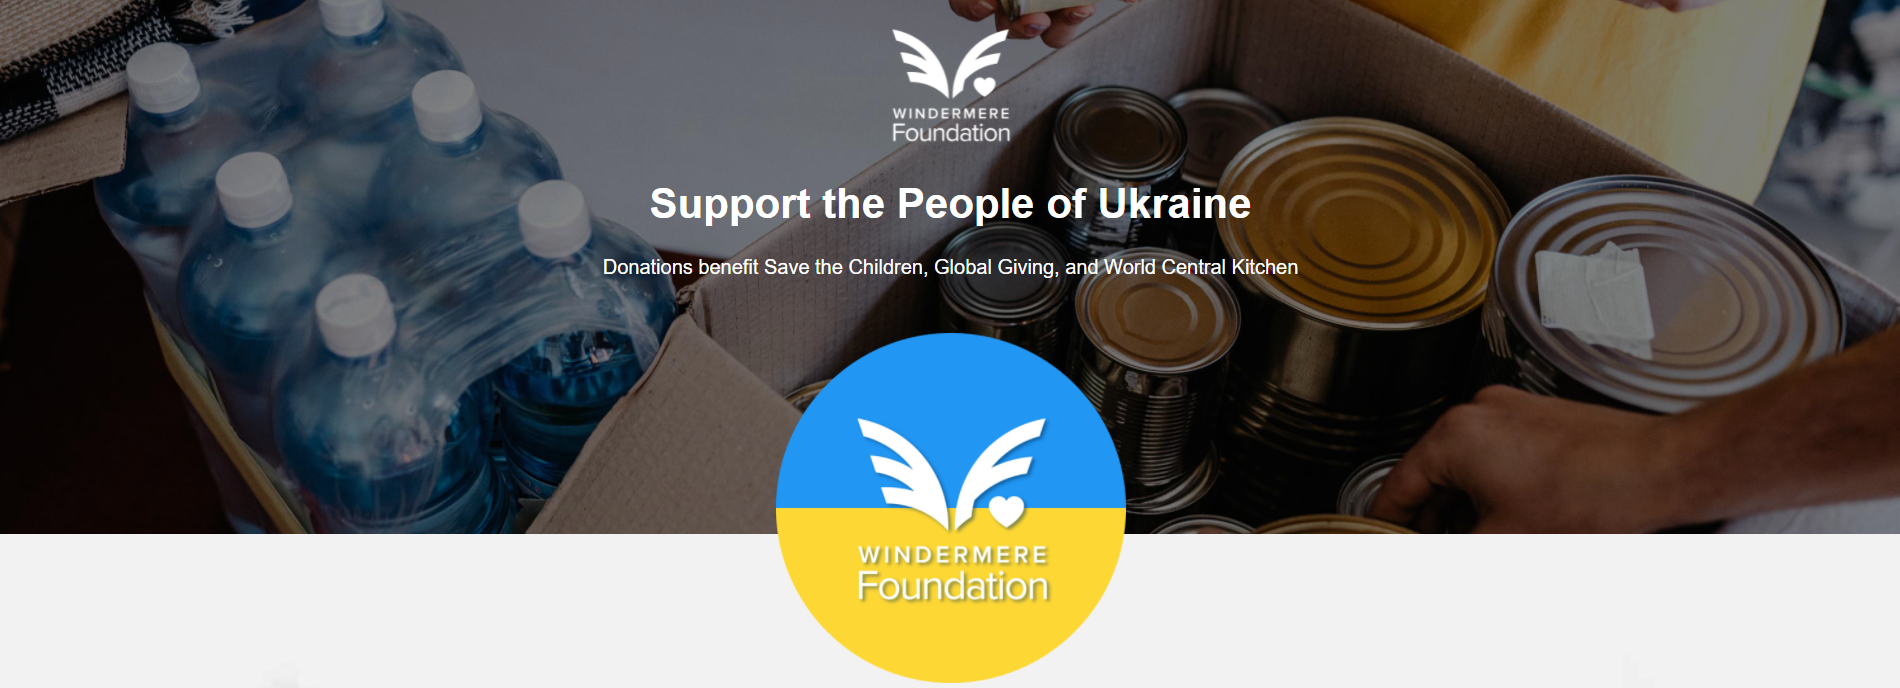 Support People of Ukraine - Website